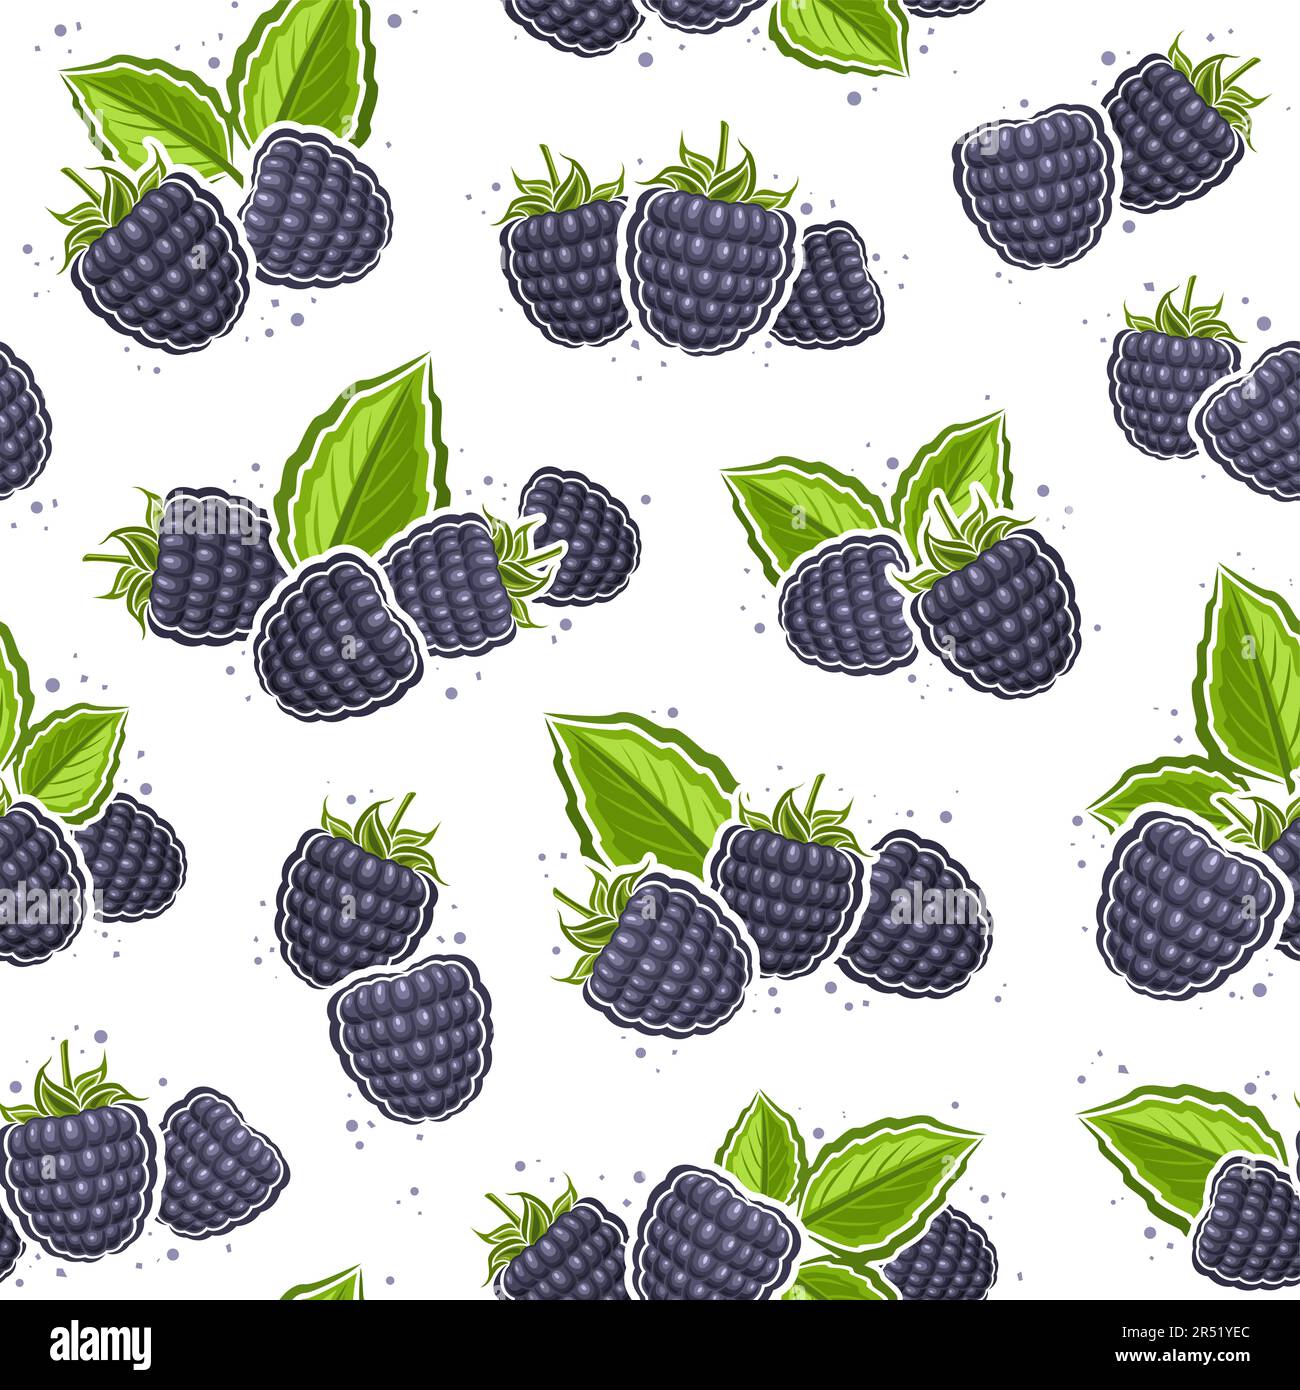 Vector Blackberry Seamless Pattern, wiederhole den Hintergrund mit ausgeschnittenen Illustrationen von Still-Beeren-Kompositionen mit grünen Blättern zum Einwickeln Stock Vektor